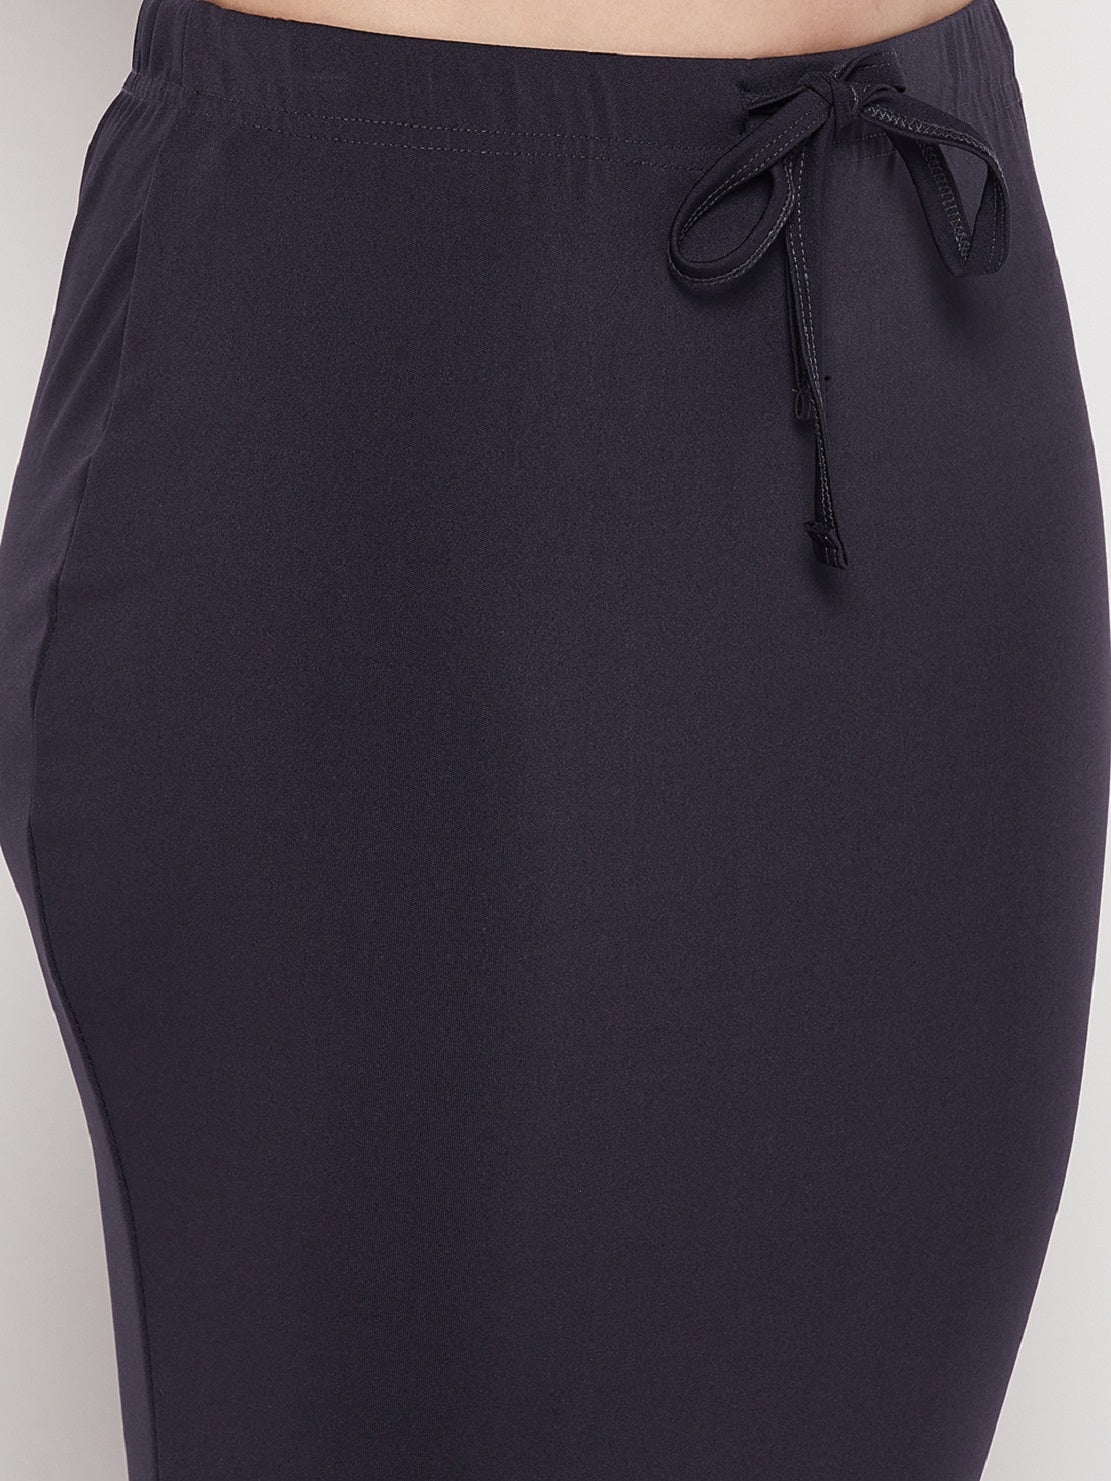 SIRIL Women's Lycra Saree Shapewear Petticoat Pack of 2, Black, Cream, M  price in UAE,  UAE